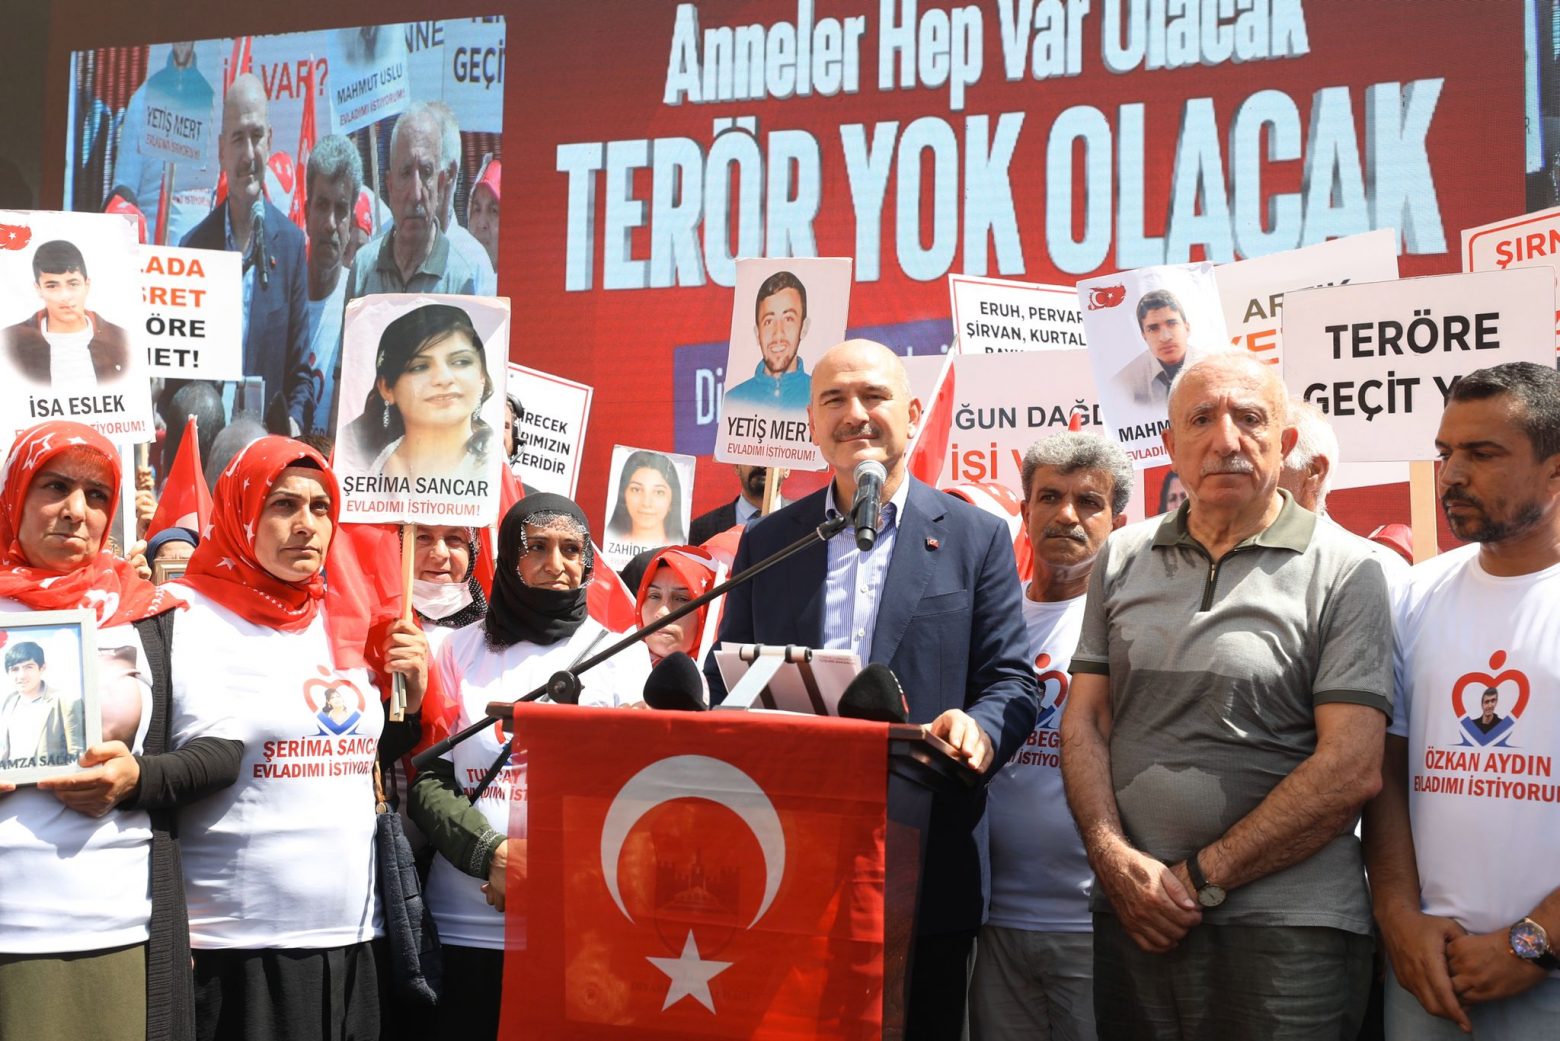 Σουλεϊμάν Σοϊλού: «Αν δεν υπήρχαν οι ΗΠΑ, δεν θα υπήρχε η τρομοκρατική οργάνωση PKK»